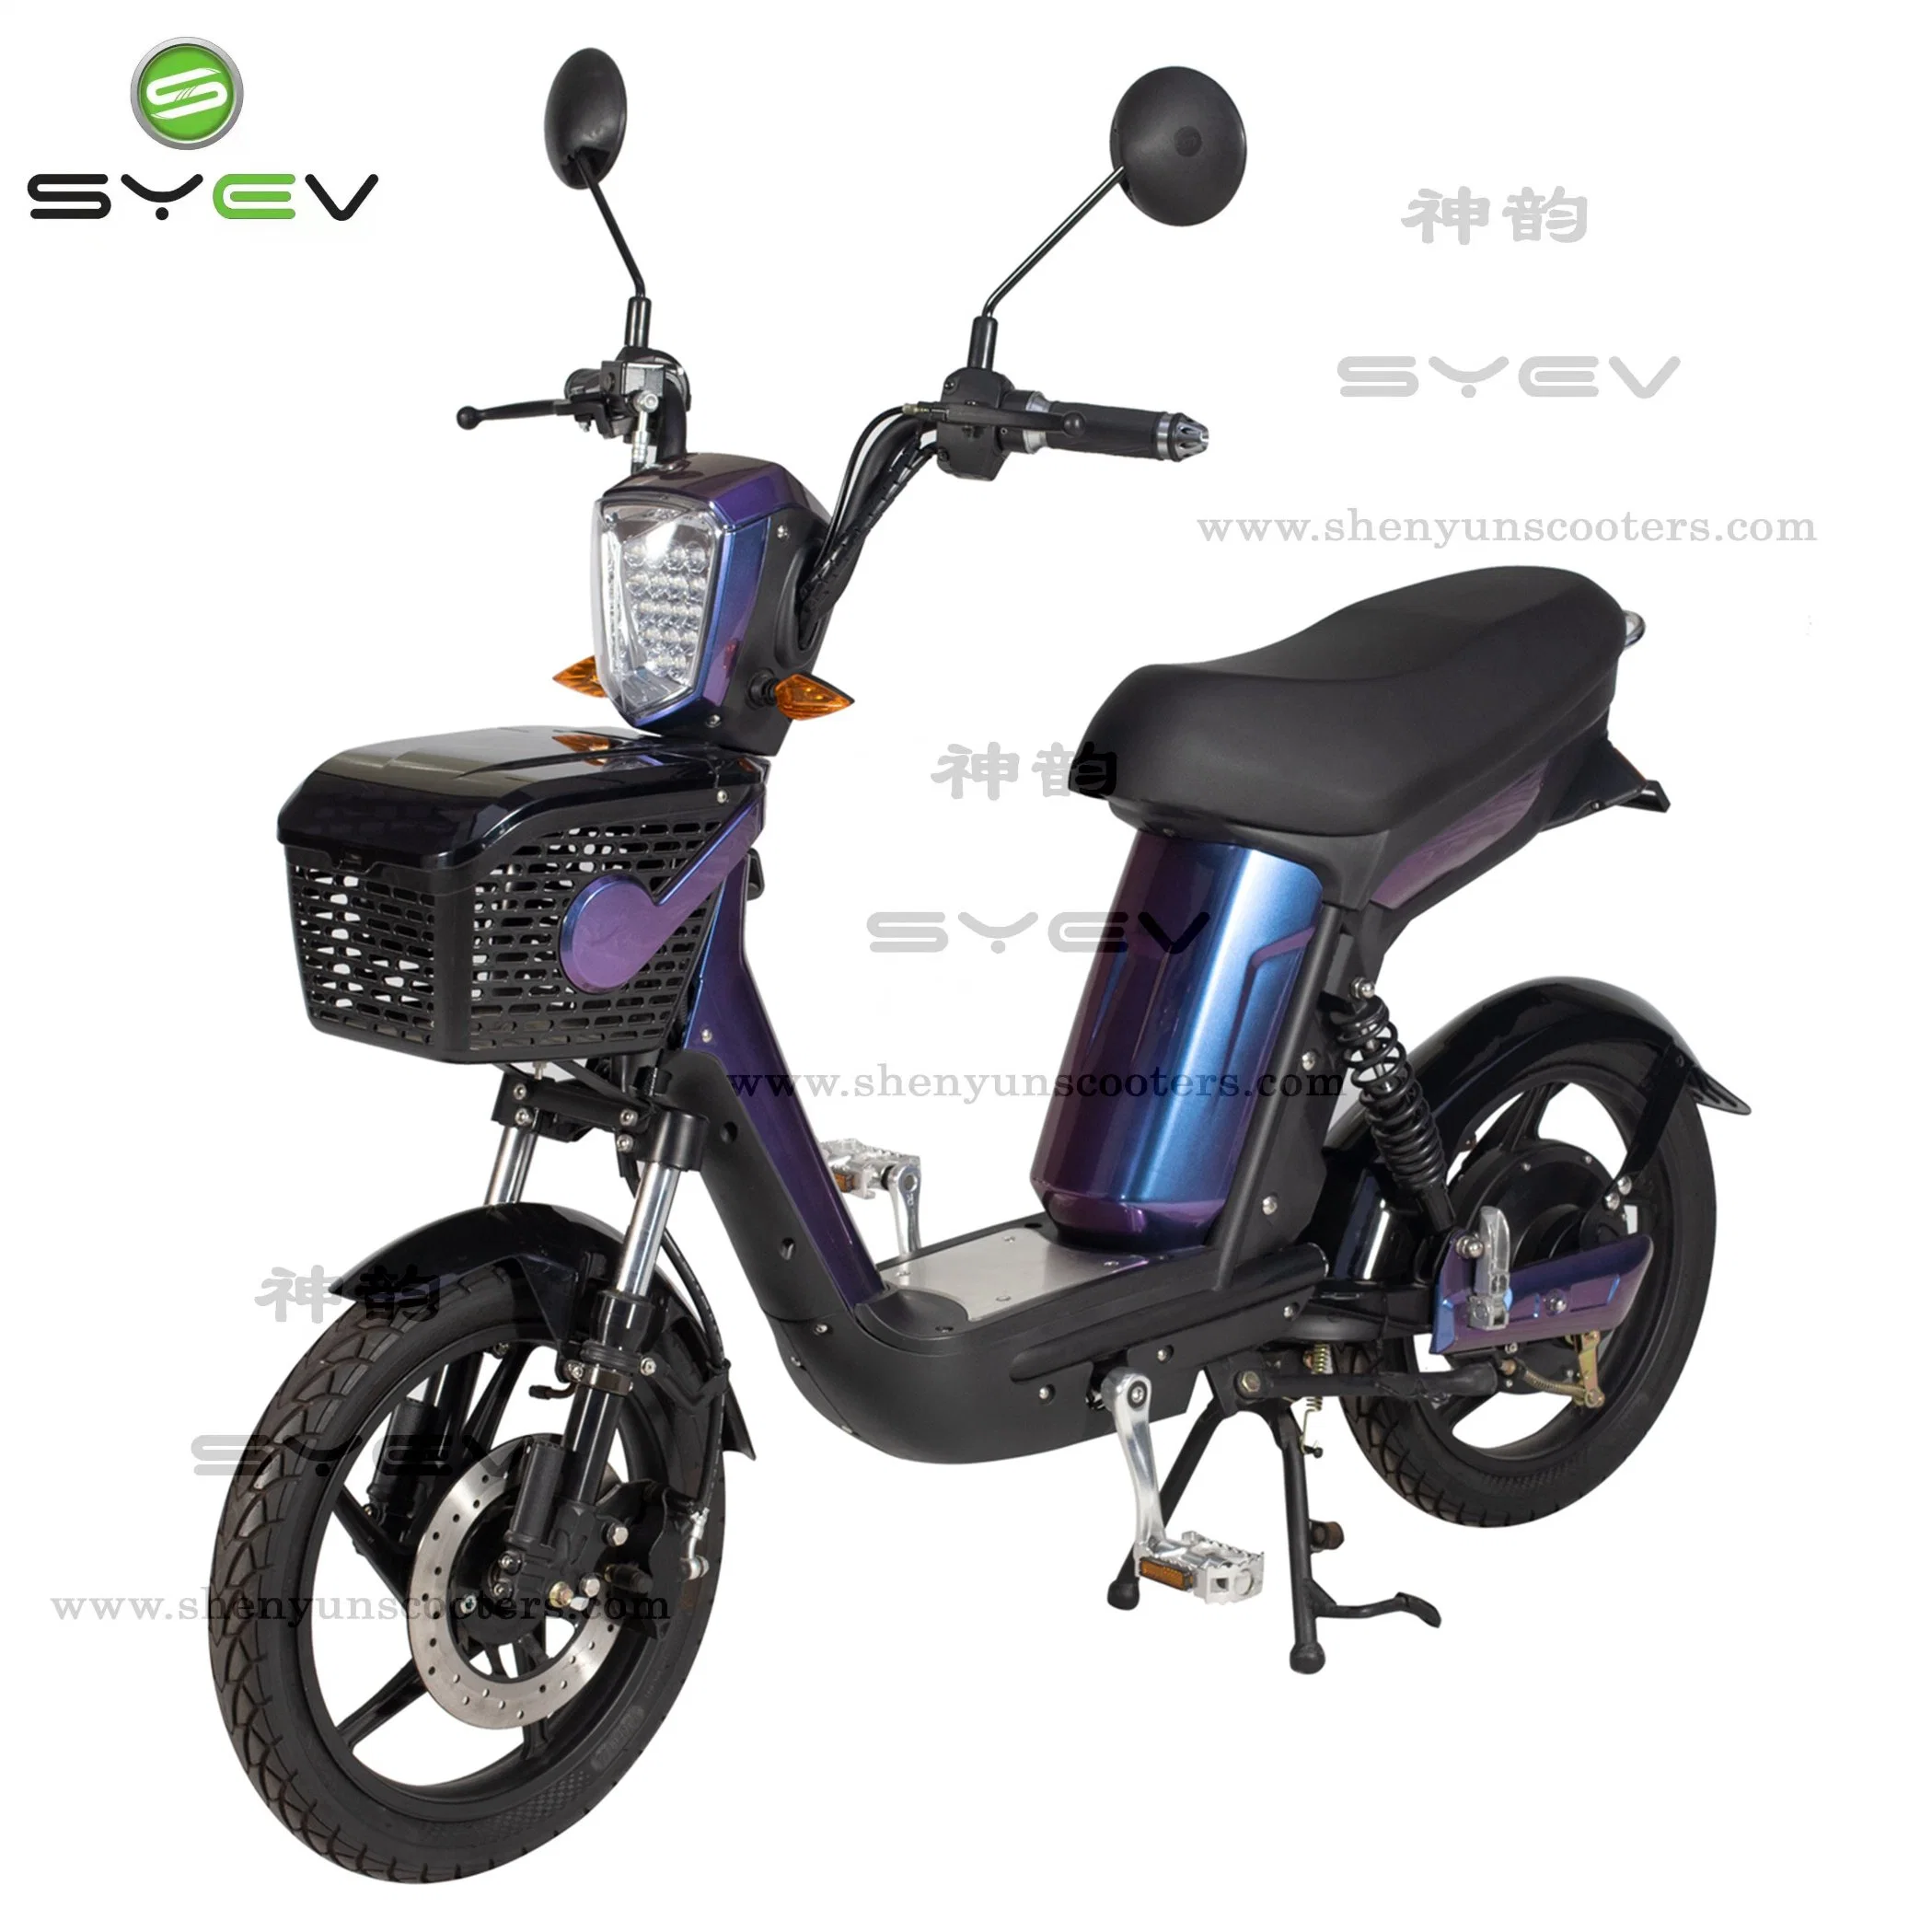 مصنع بالجملة CE ميني سباق الدراجات النارية سعر رخيص 2 عجلة خارج الطرق الدراجة البخارية 48V 500W مركبة الحركية الكهربائية الدراجة الكهربائية مع بطارية قابلة للإزالة